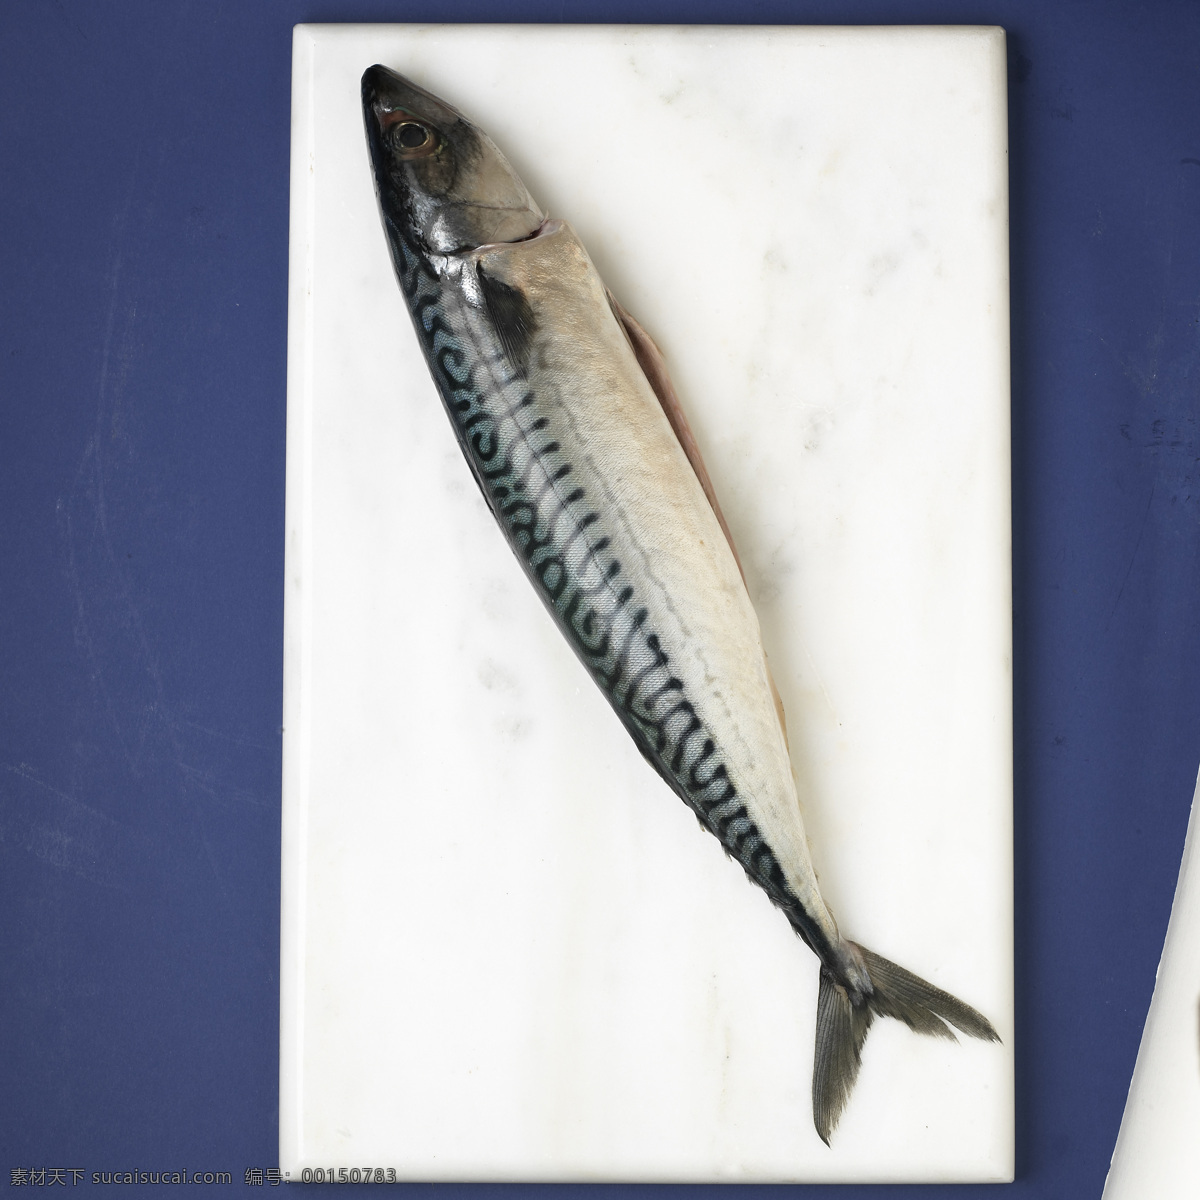 砧板 上 秋 刀鱼 厨房 生物世界 鱼类 砧板上 秋刀鱼 做菜 装饰素材 室内设计